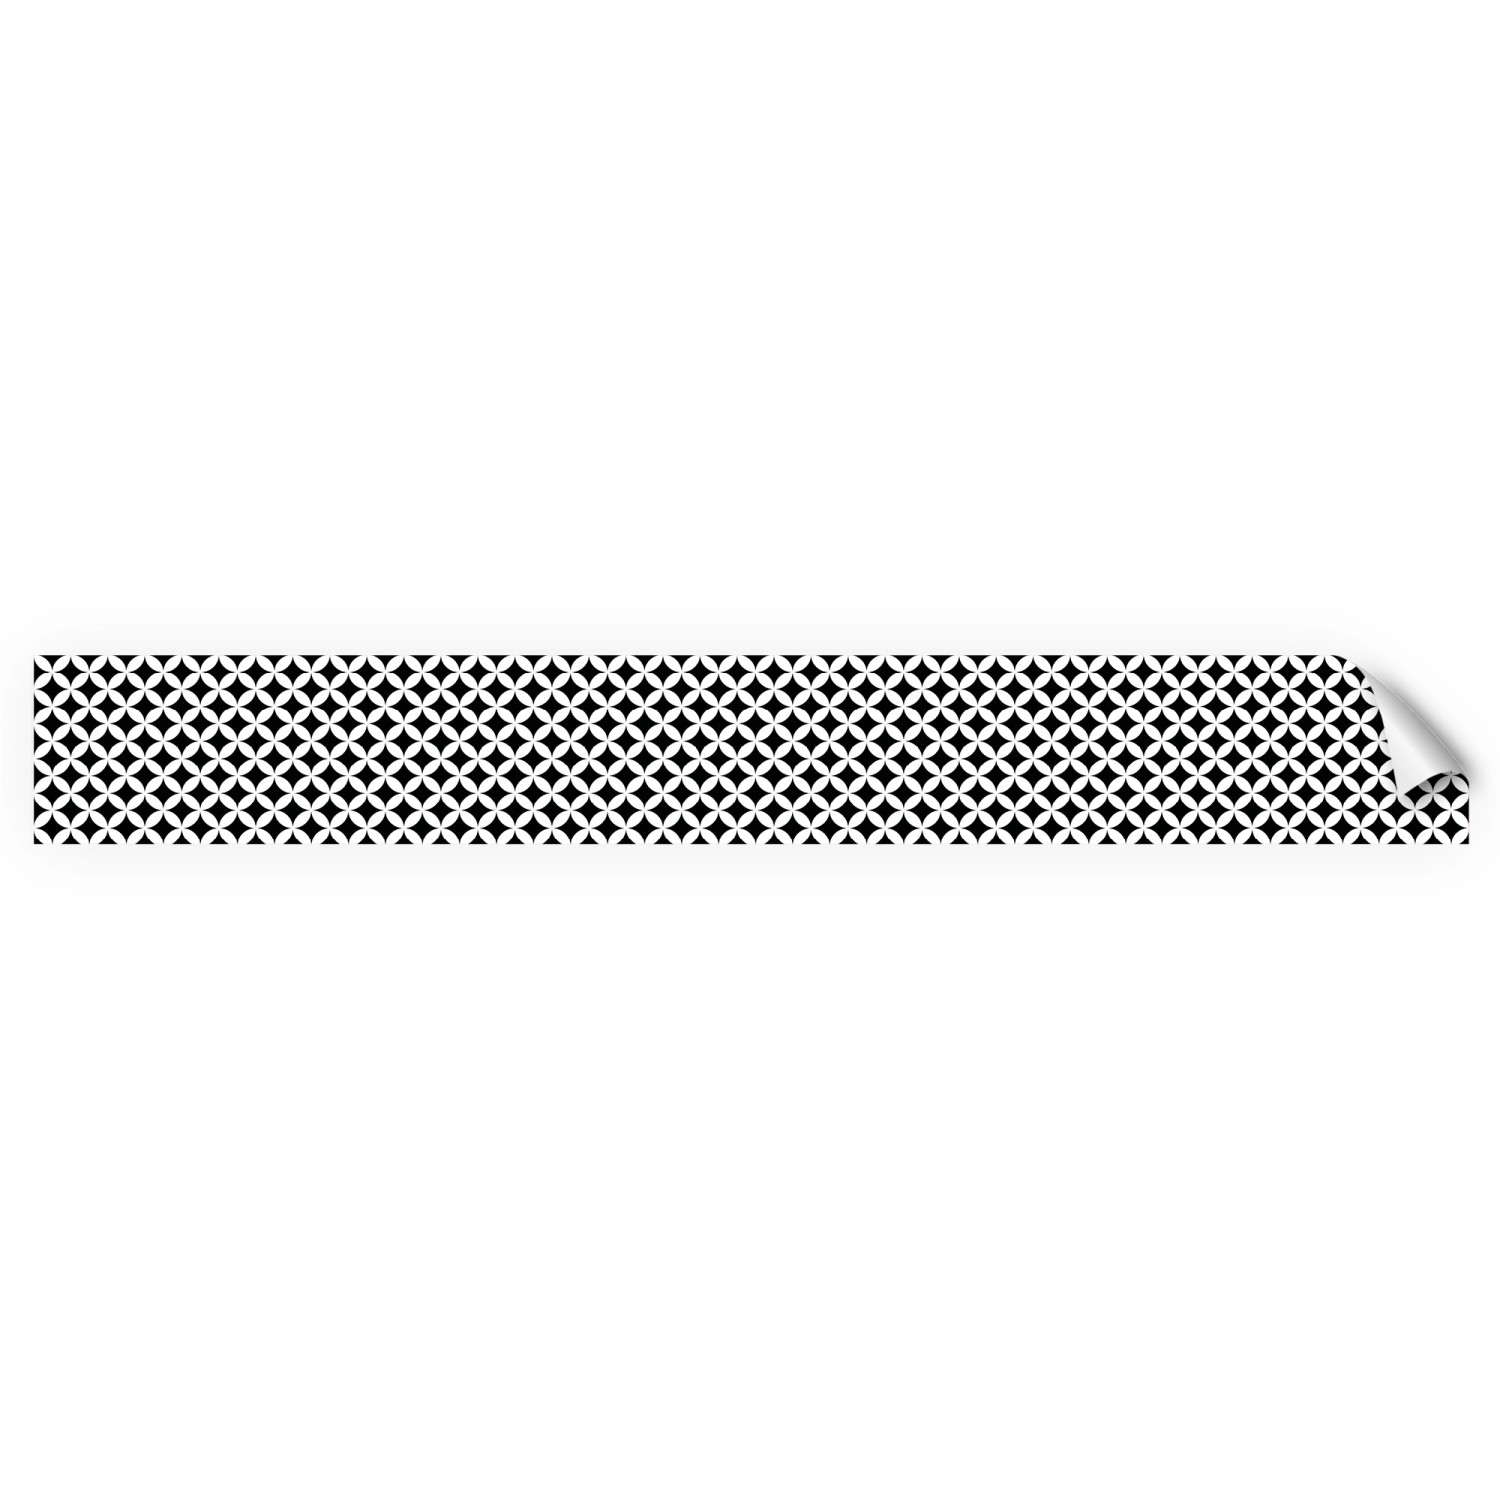 Myspotti Küchenrückwandfolie Chadi Selbstklebend 450 cm x 60 cm Schwarz-Weiß